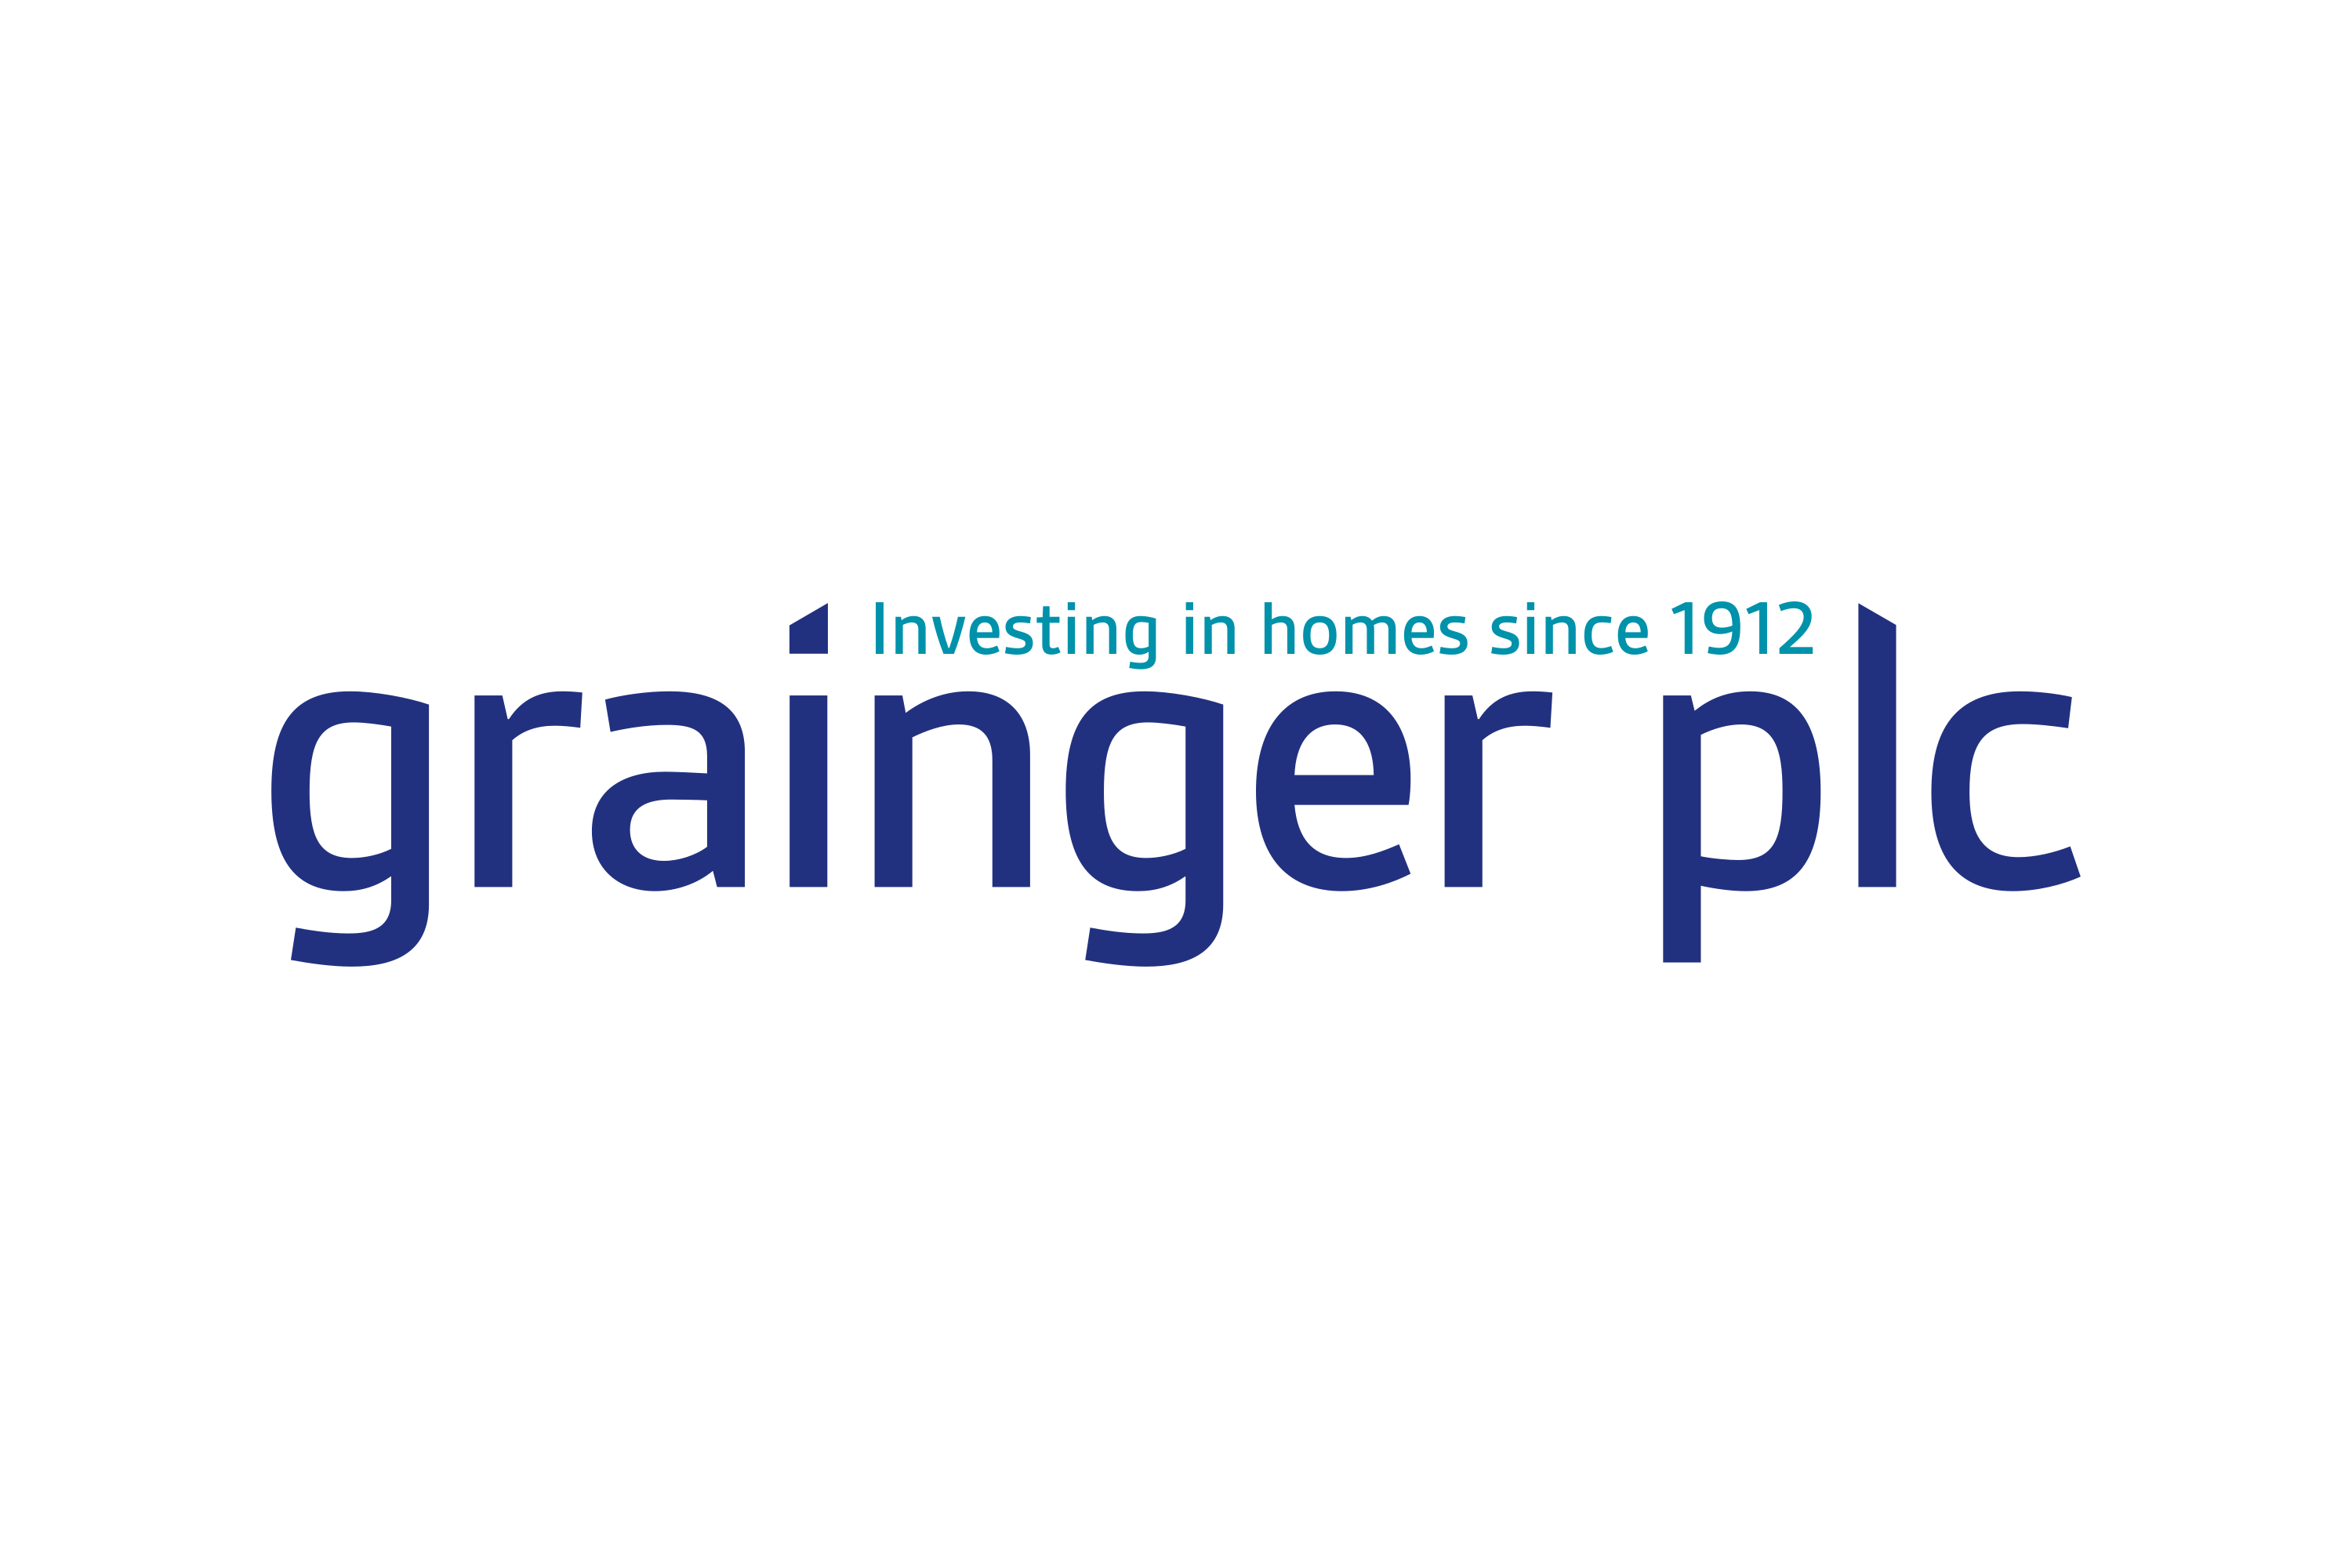 Grainger plc Logo